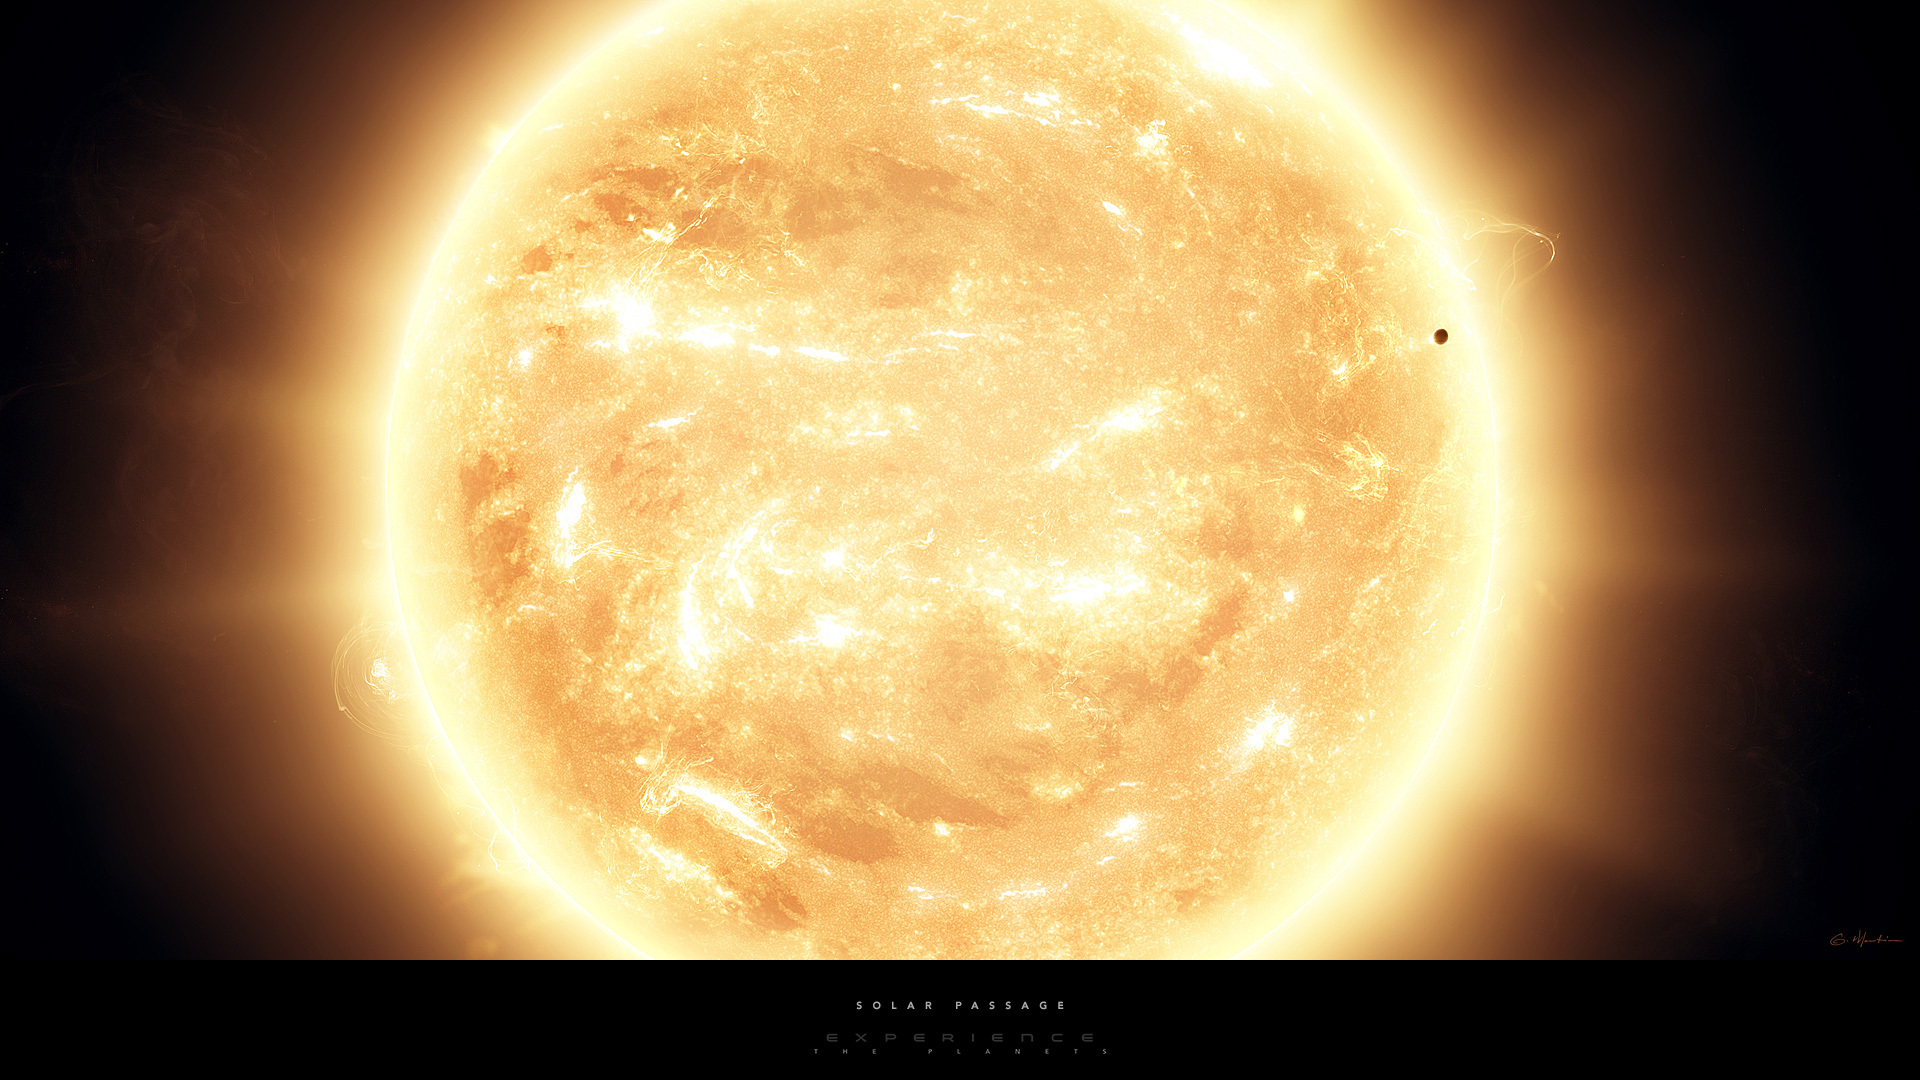 Обои Планеты с солнцем картинки на рабочий стол на тему Космос - скачать бесплатно